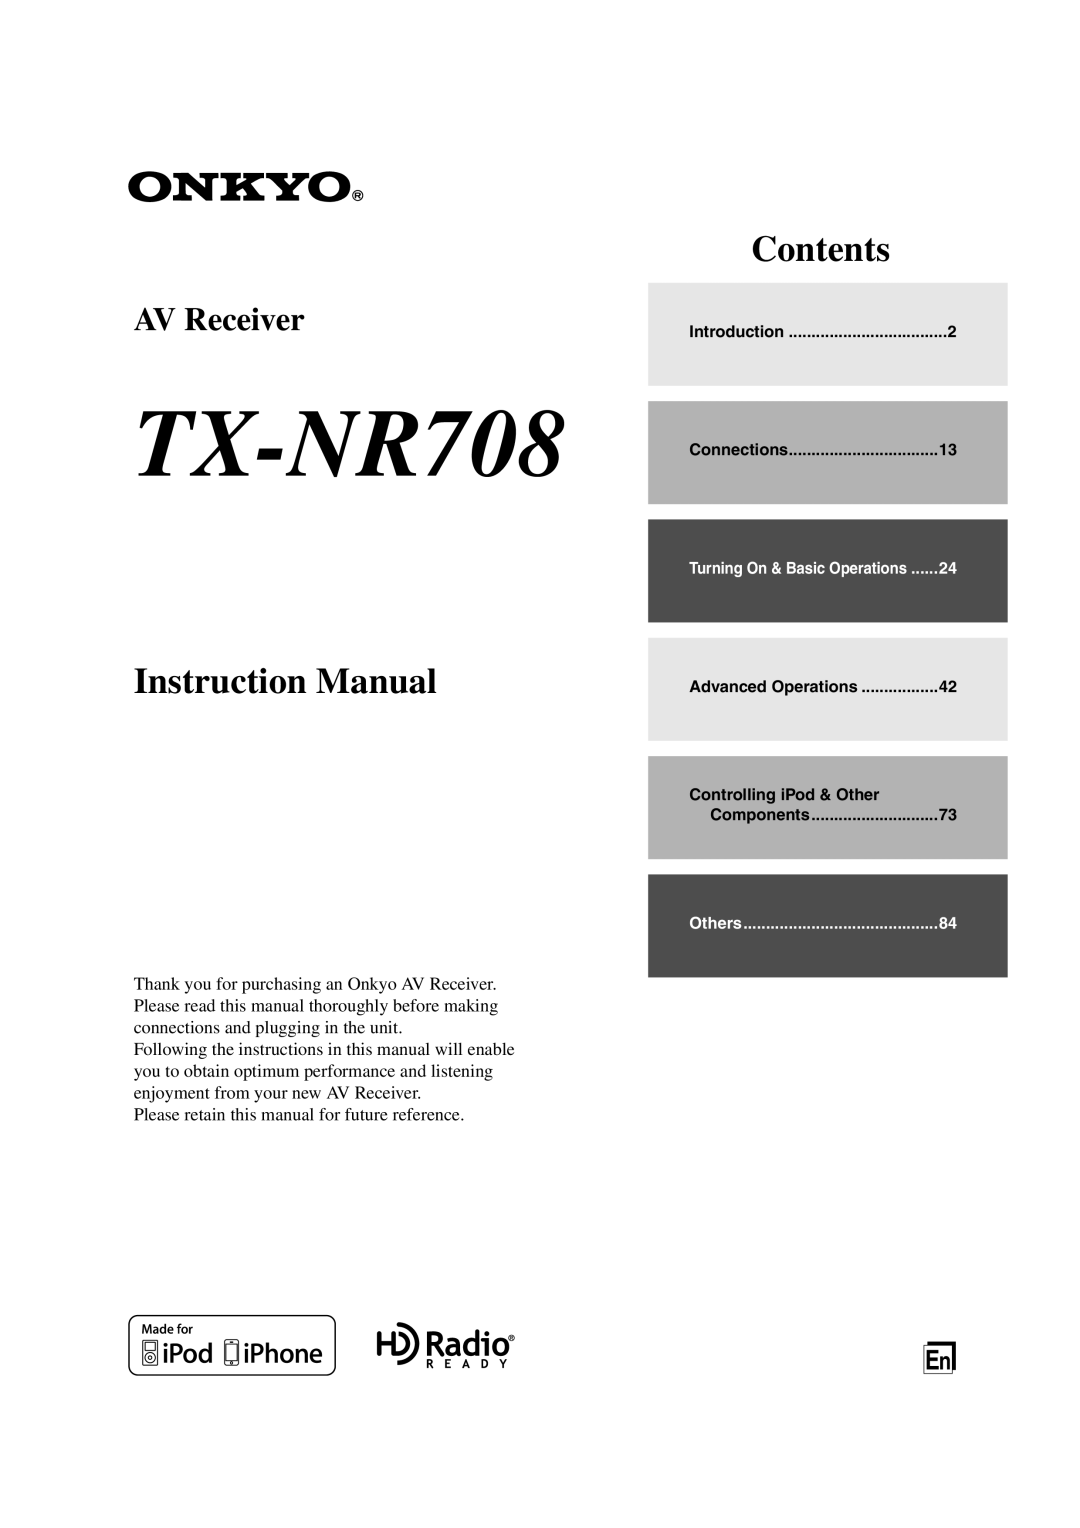 Onkyo TX-NR708 instruction manual Instruction Manual, Contents, AV Receiver 